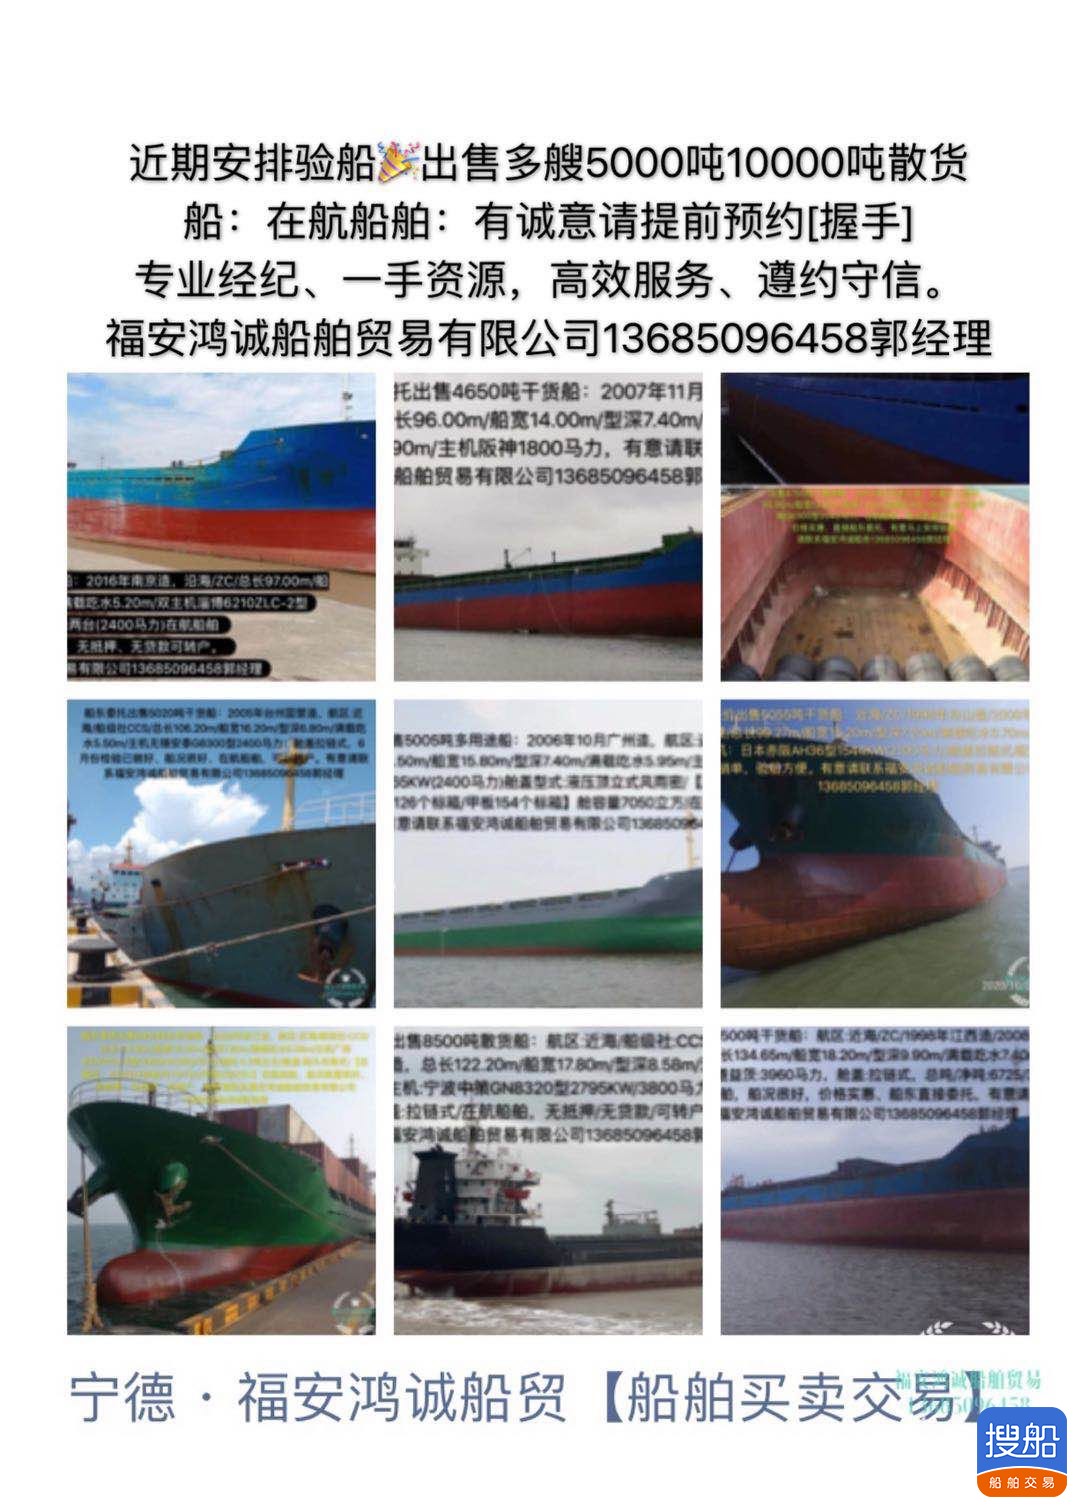 出售多艘3000吨10000吨散货船